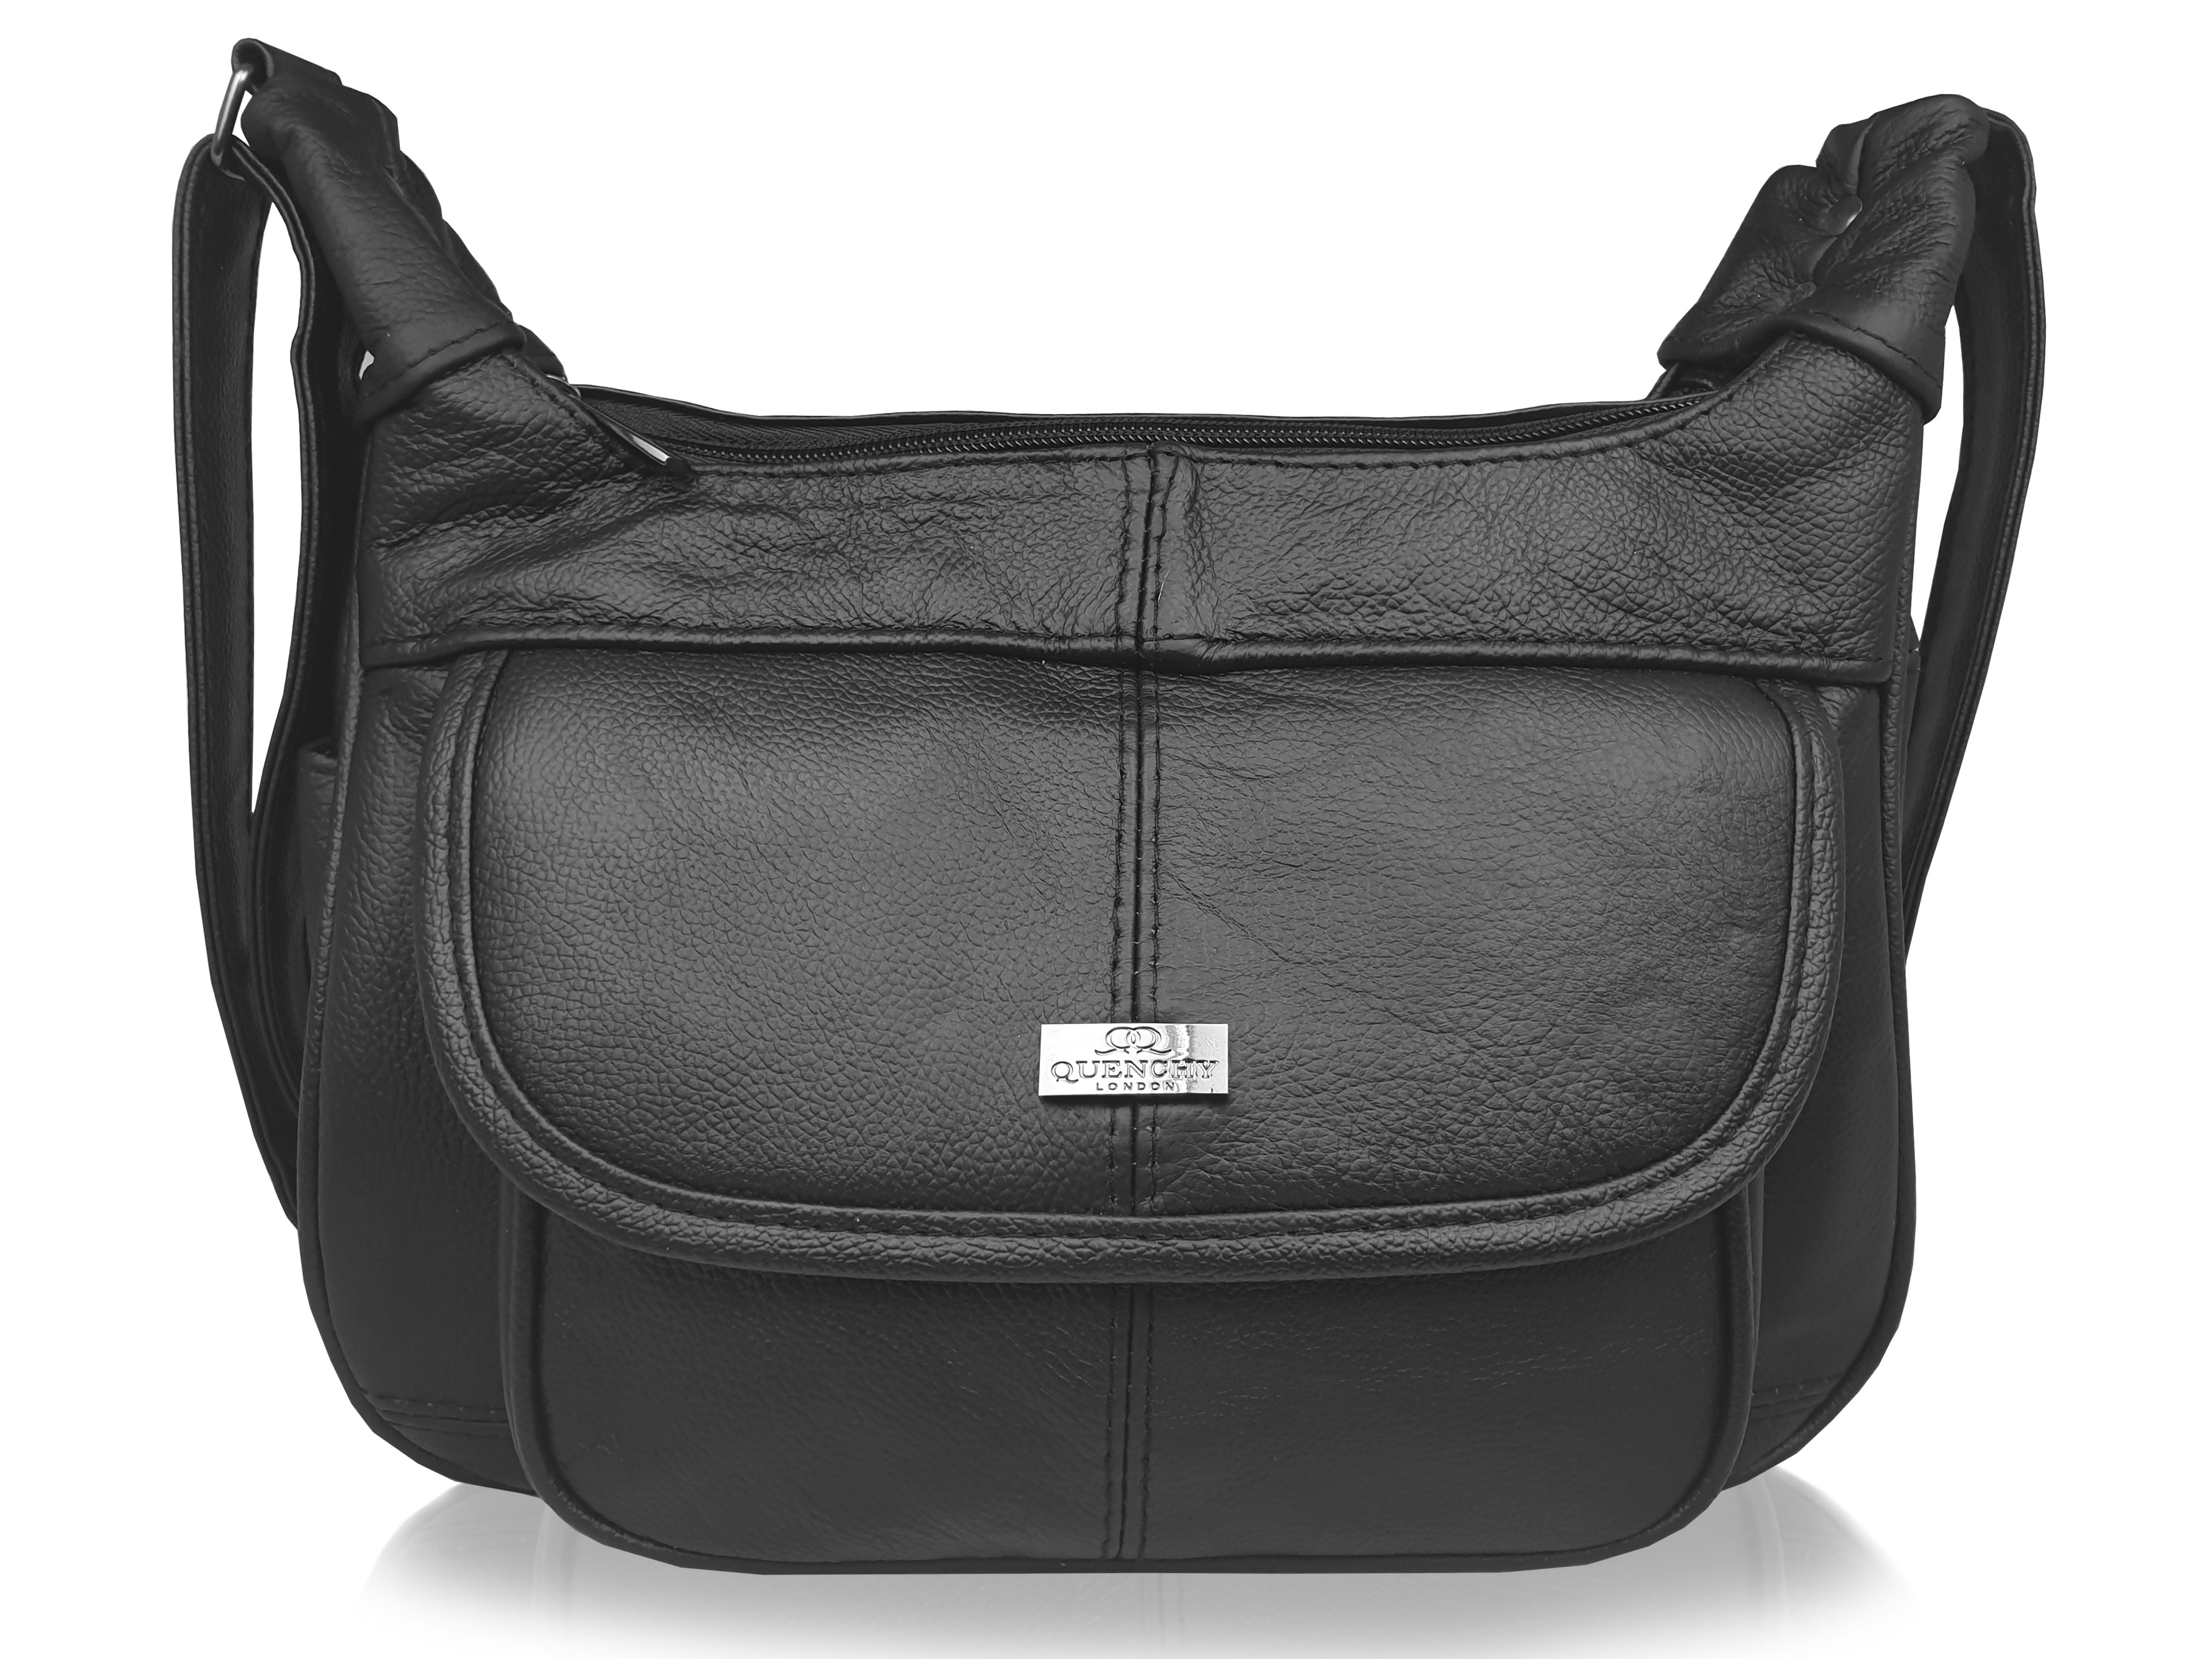 Ladies Leather Handbag QL747f2